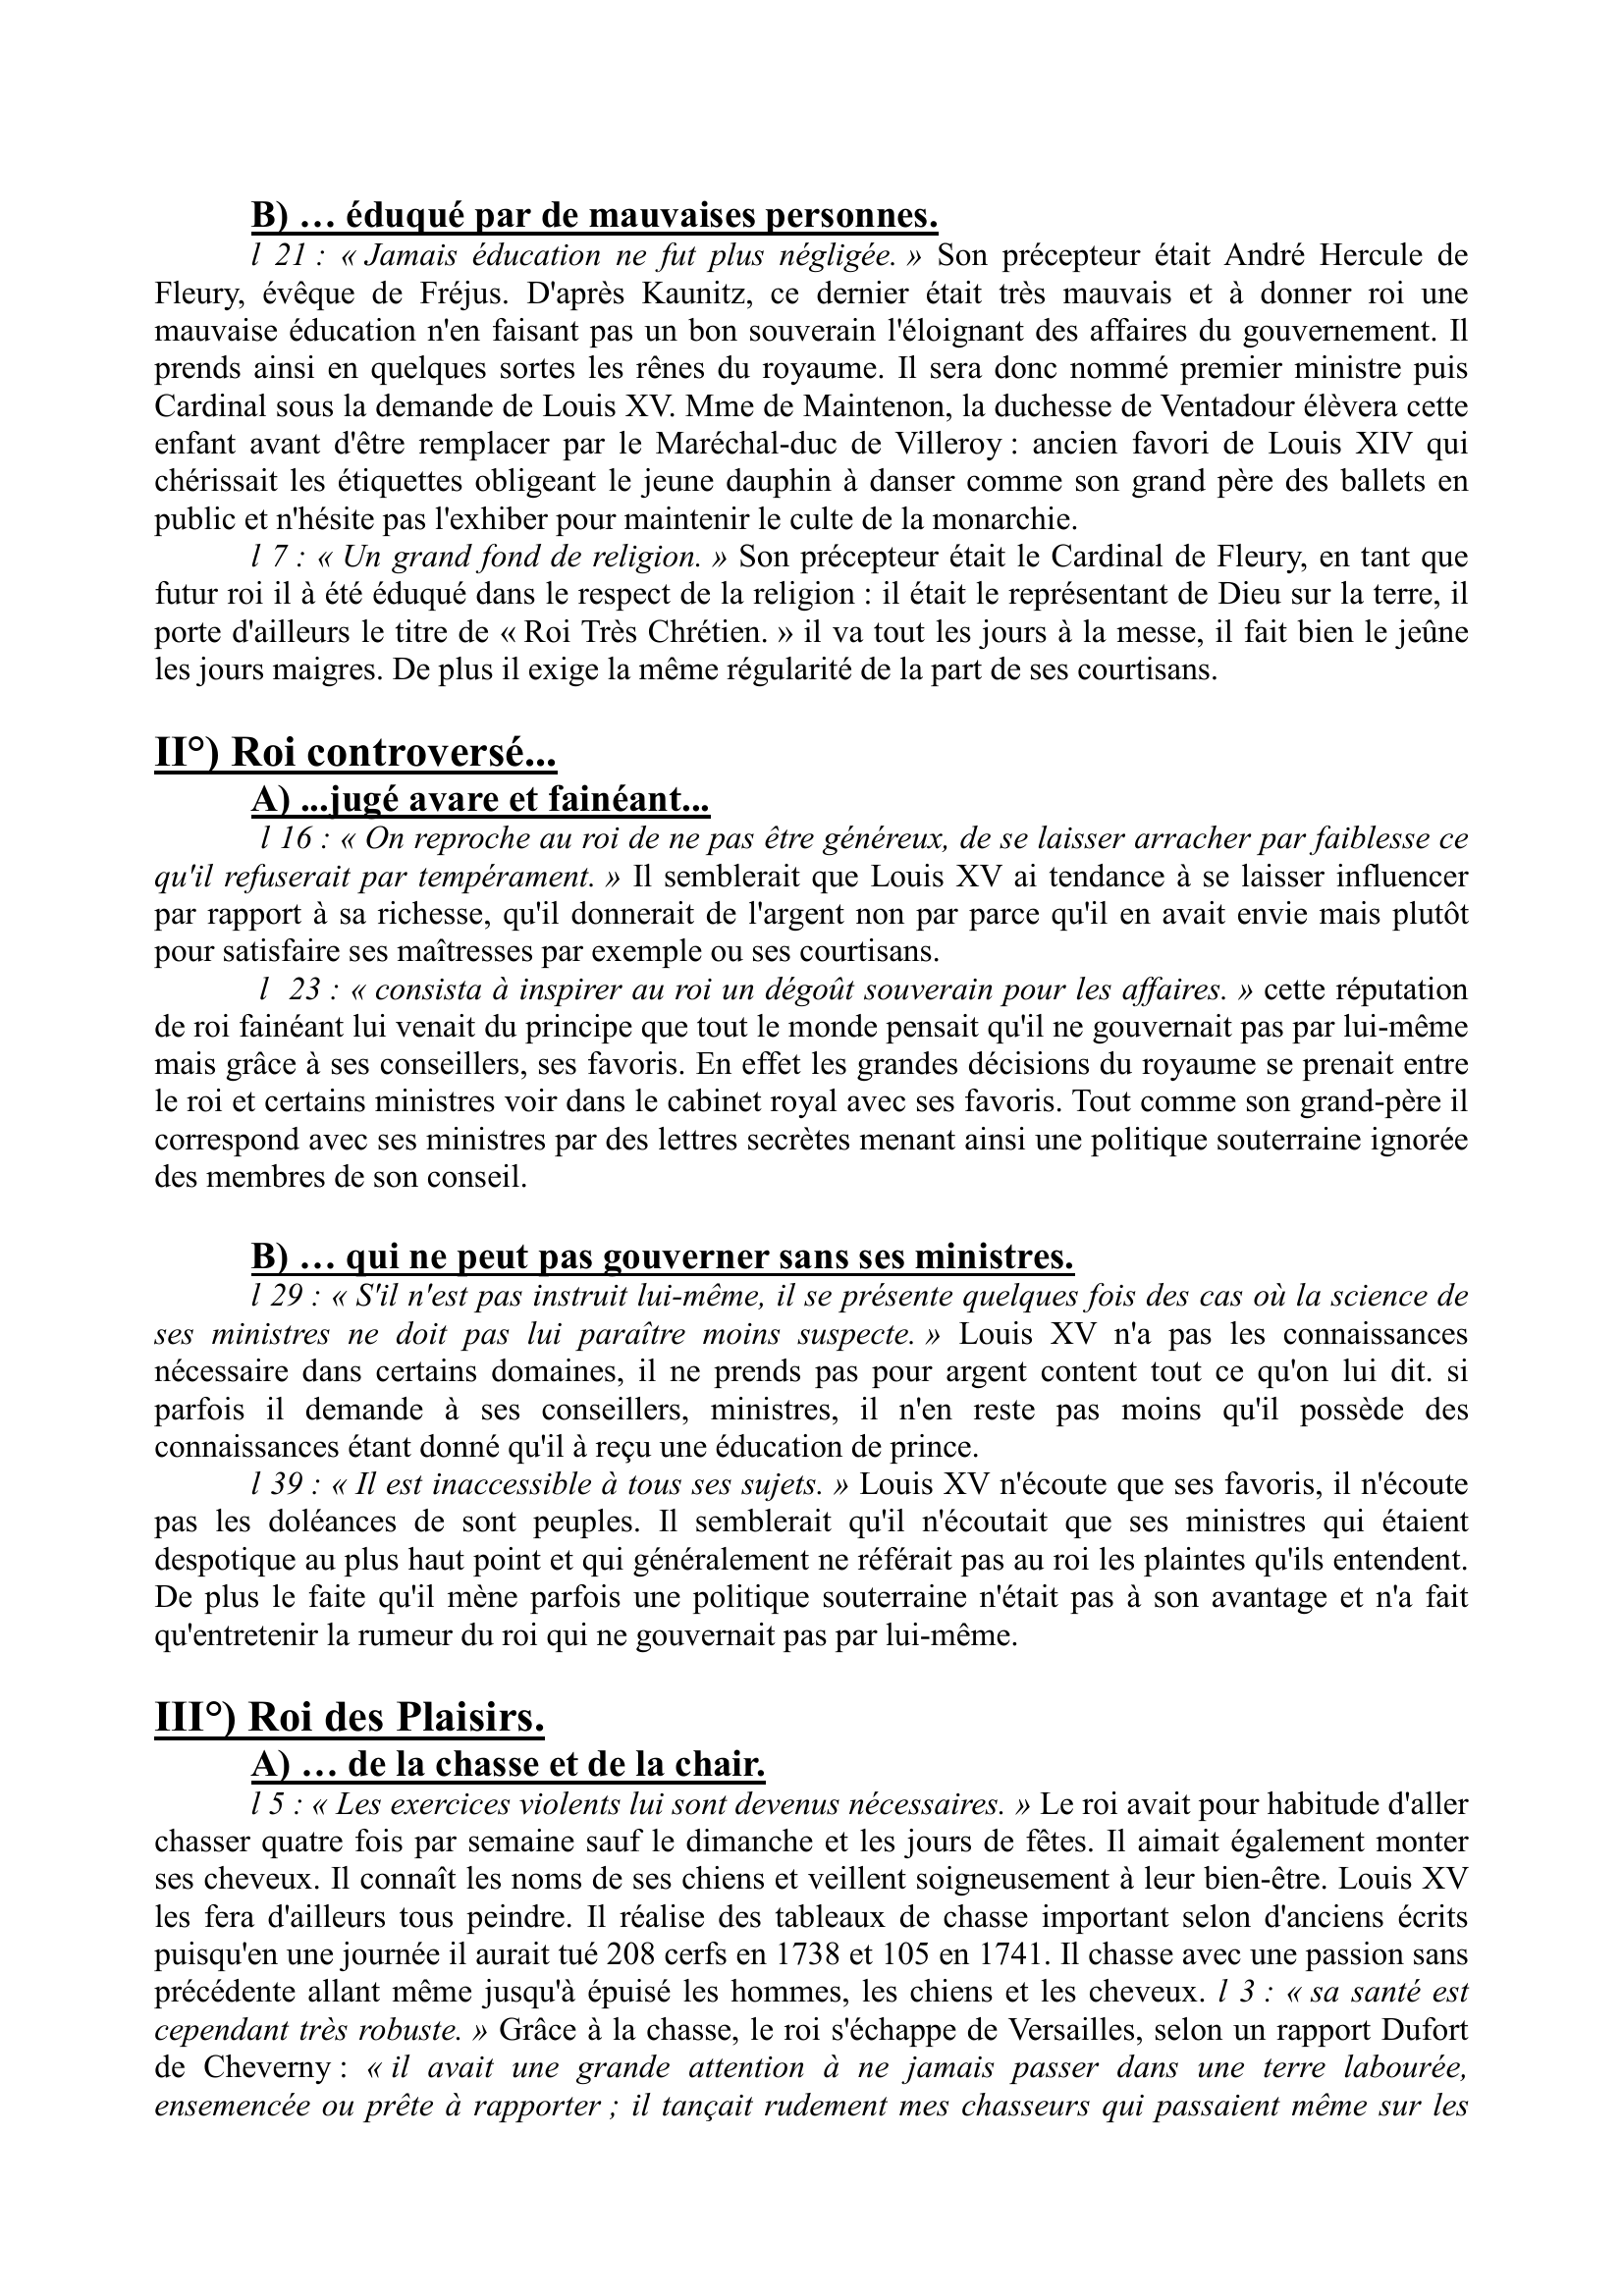 Prévisualisation du document UN PORTRAIT DE LOUIS XV du Comte de Kaunitz dans les Mémoires sur la cours de France (commentaire)